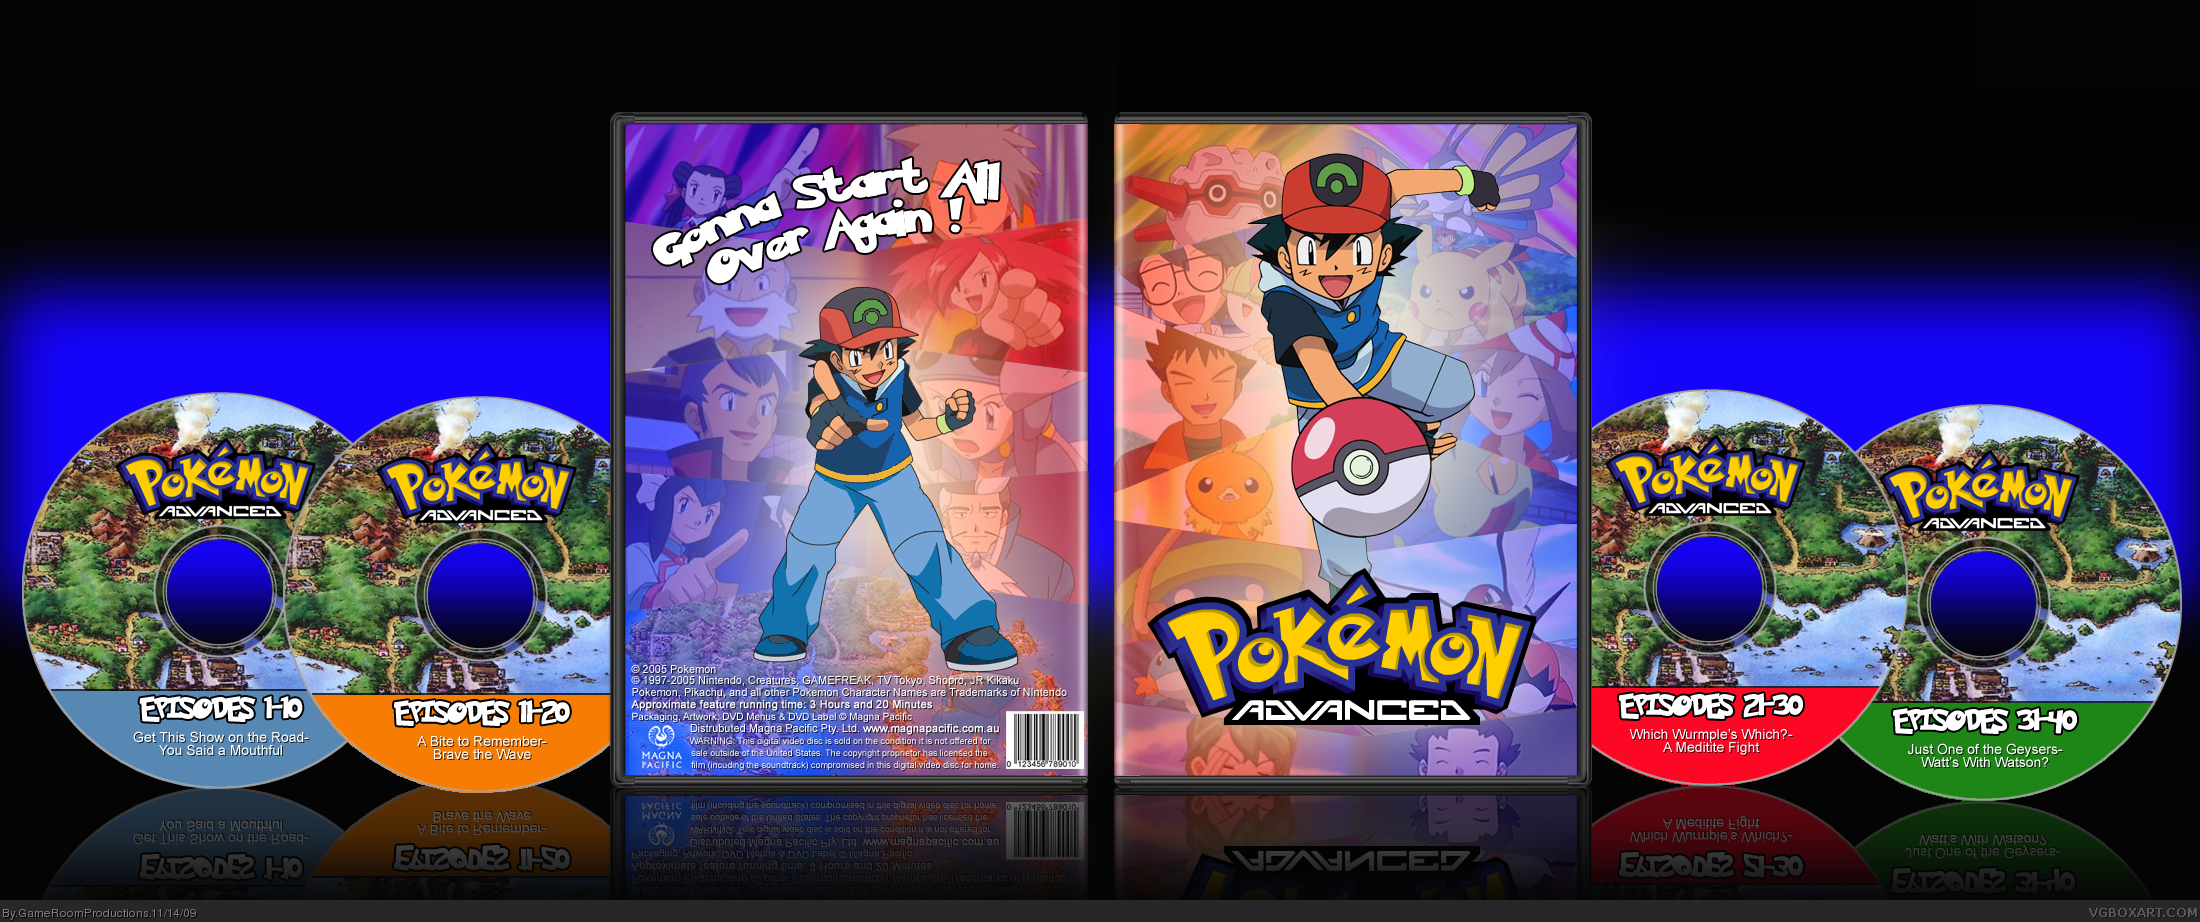 Pokemon Advanced box cover